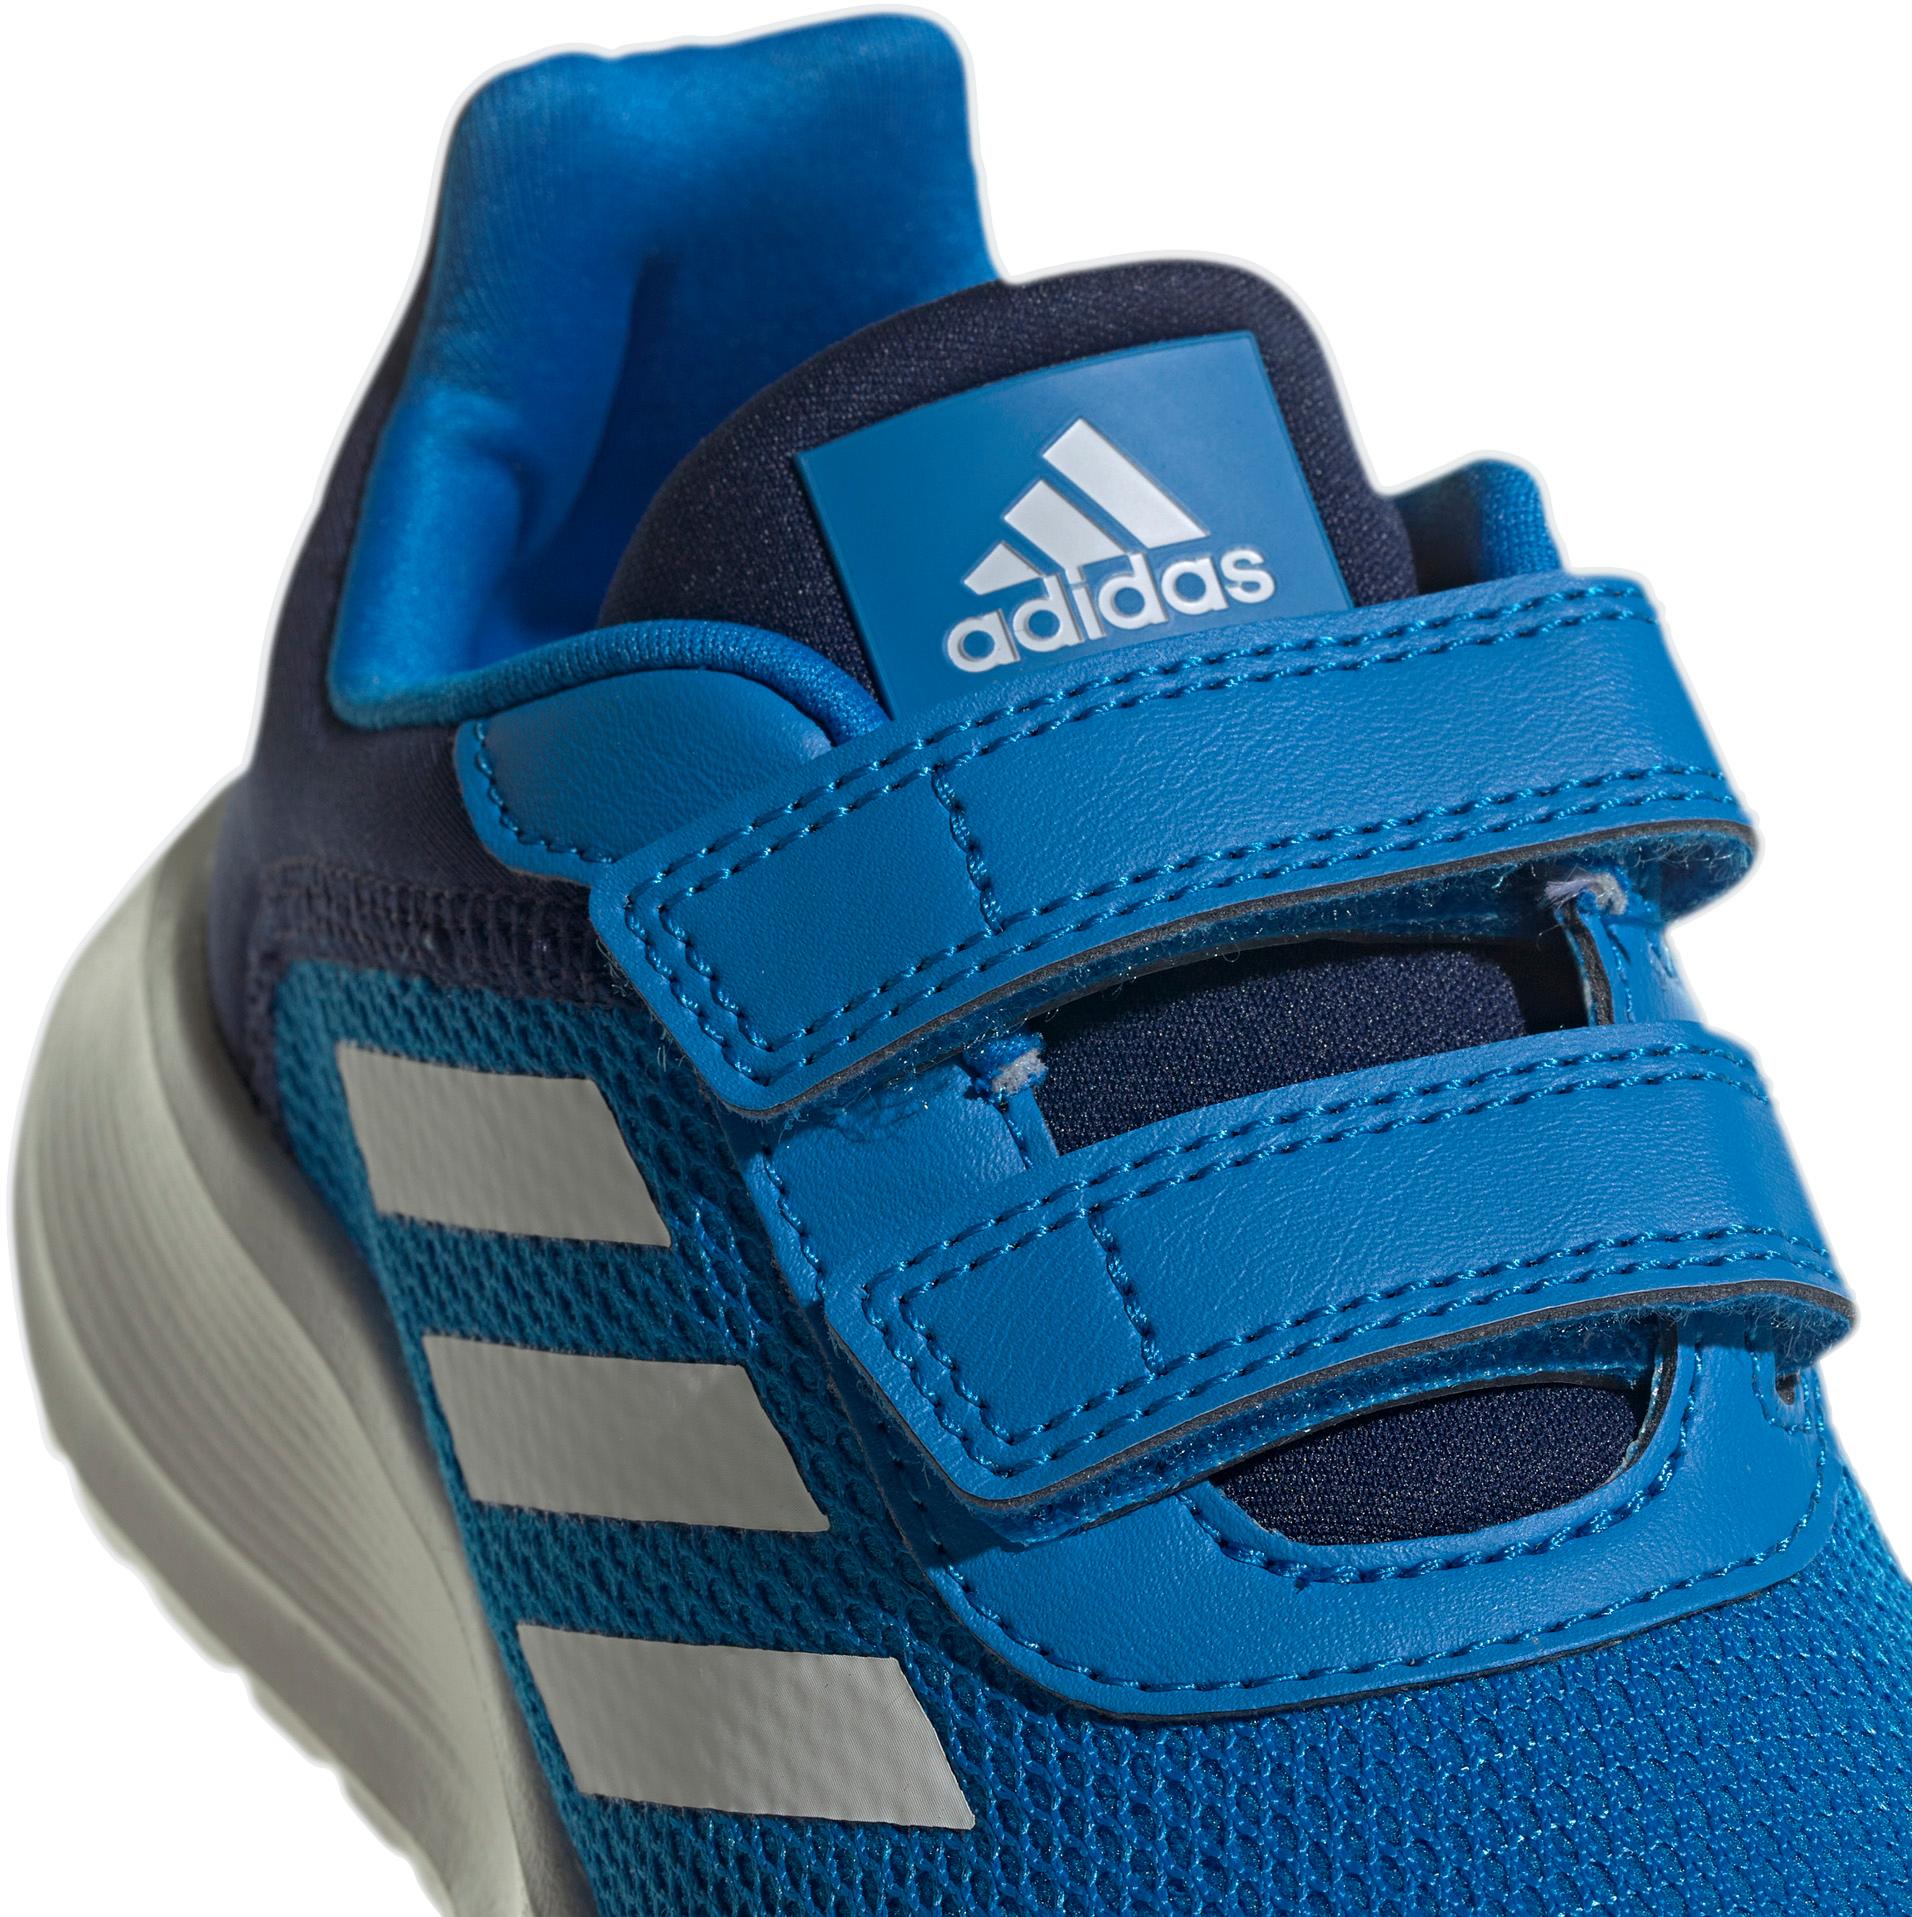 Adidas TENSAUR RUN Online SportScheck rush-core Kinder blue Shop im blue von Freizeitschuhe 2.0 kaufen white-dark